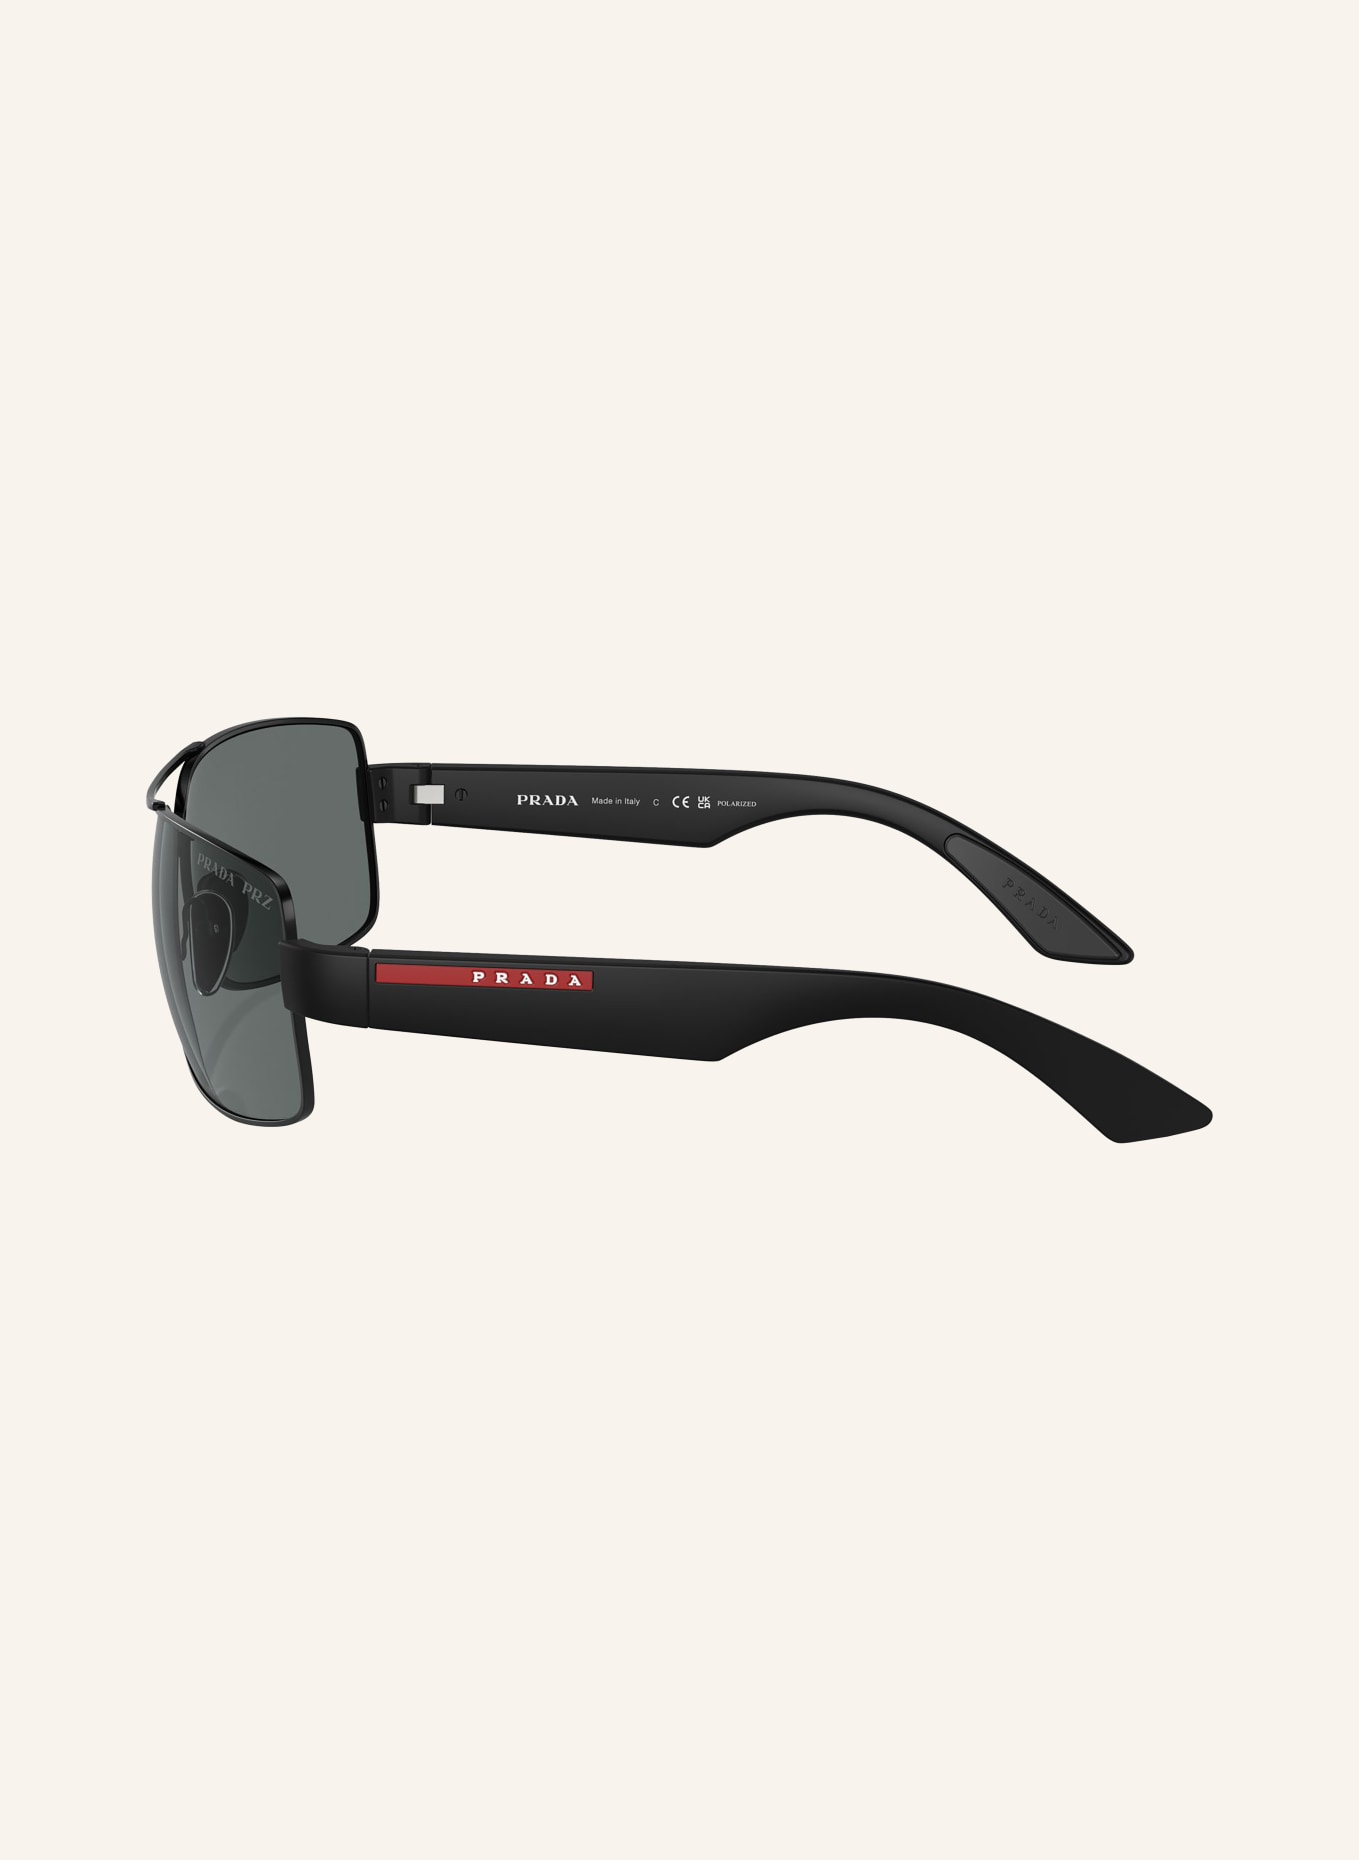 PRADA LINEA ROSSA Sunglasses PS 50ZS, Color: 1AB02G - BLACK/GRAY POLARIZED (Image 4)